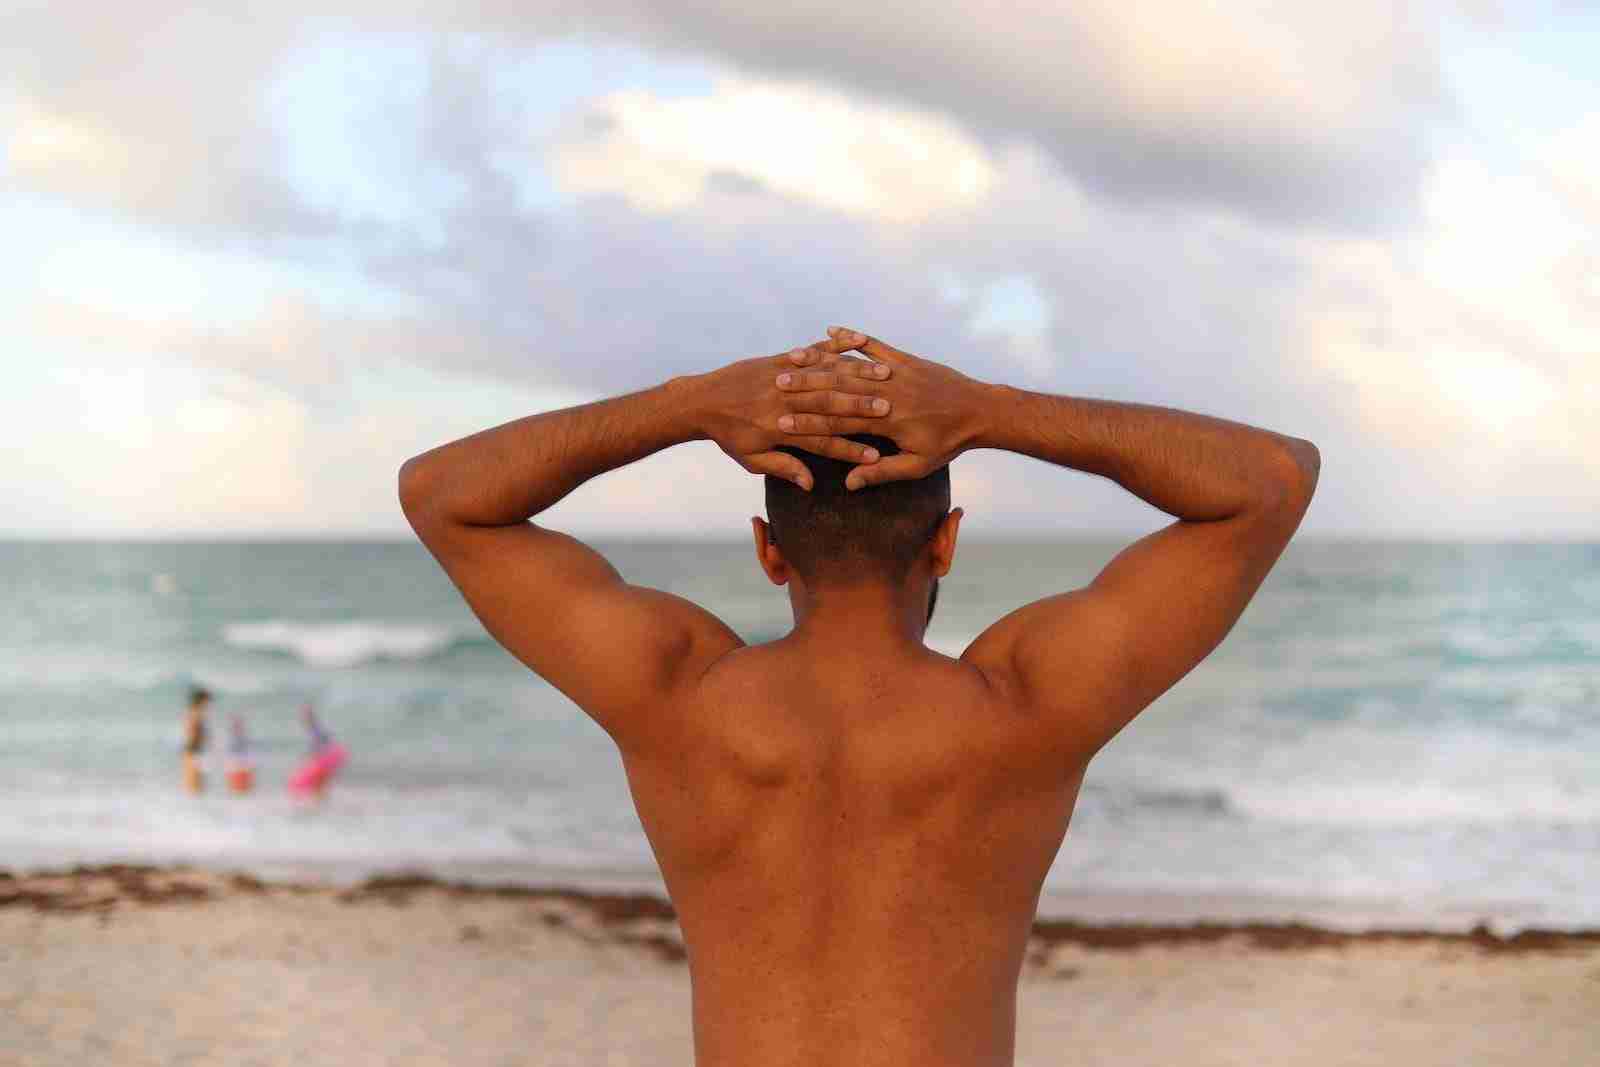 Mejores correctores de espalda: cómo reducir el dolor lumbar y dorsal con una postura adecuada 12